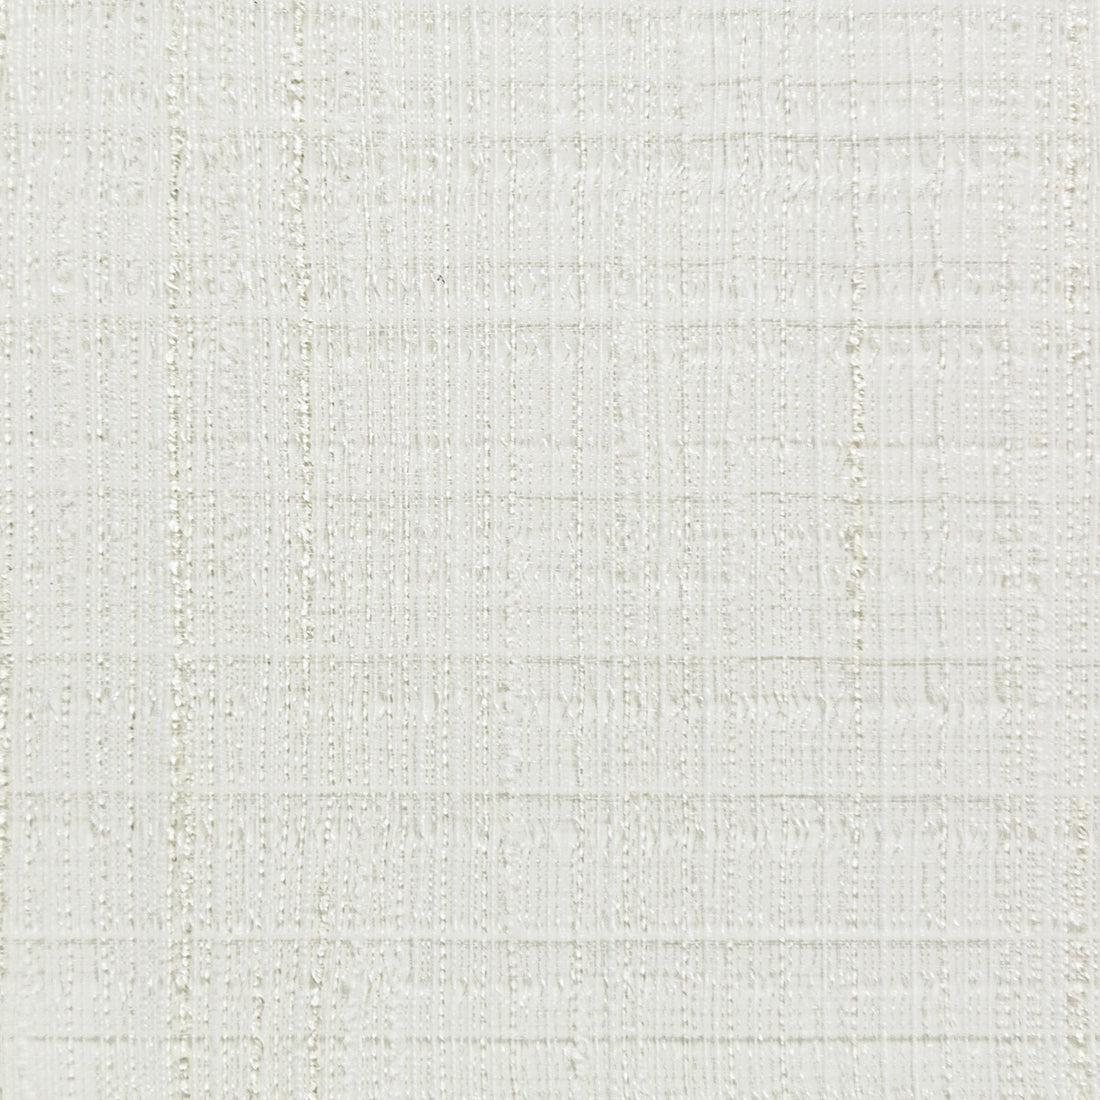 Kravet Basics fabric in 4761-1 color - pattern 4761.1.0 - by Kravet Basics